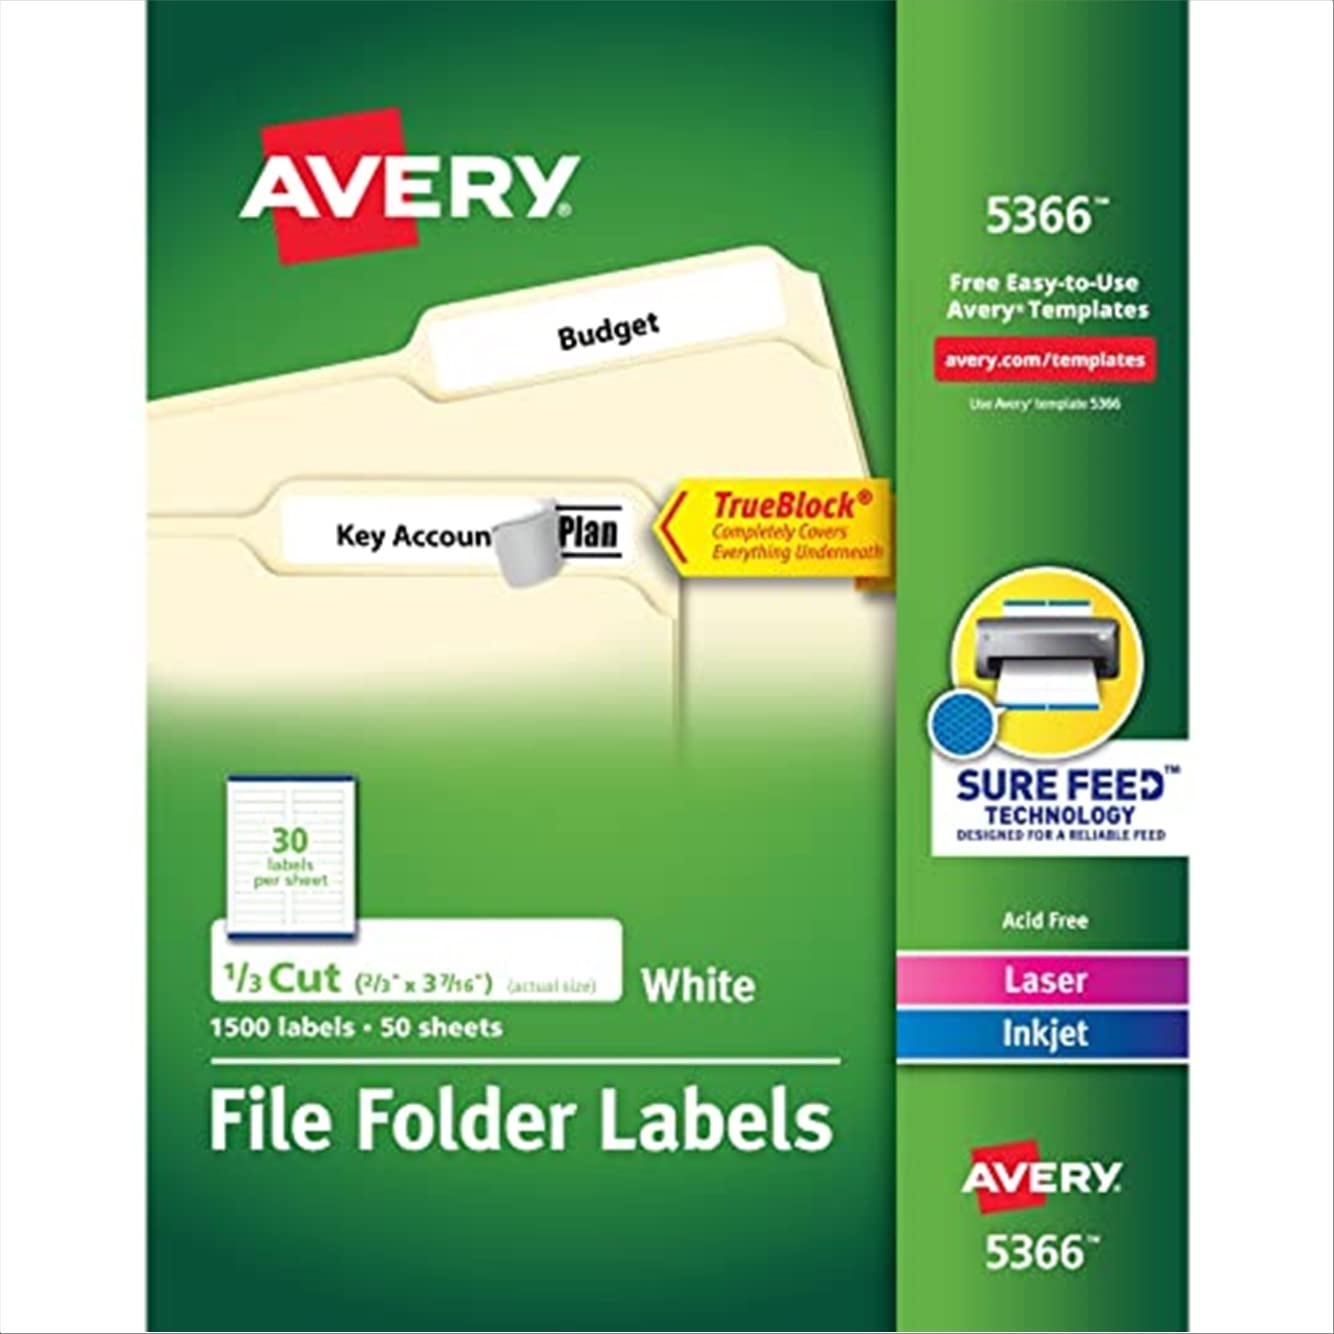 Avery TrueBlock 기술이 적용된 레이저 및 잉크젯 프린터용 파일 폴더 레이블